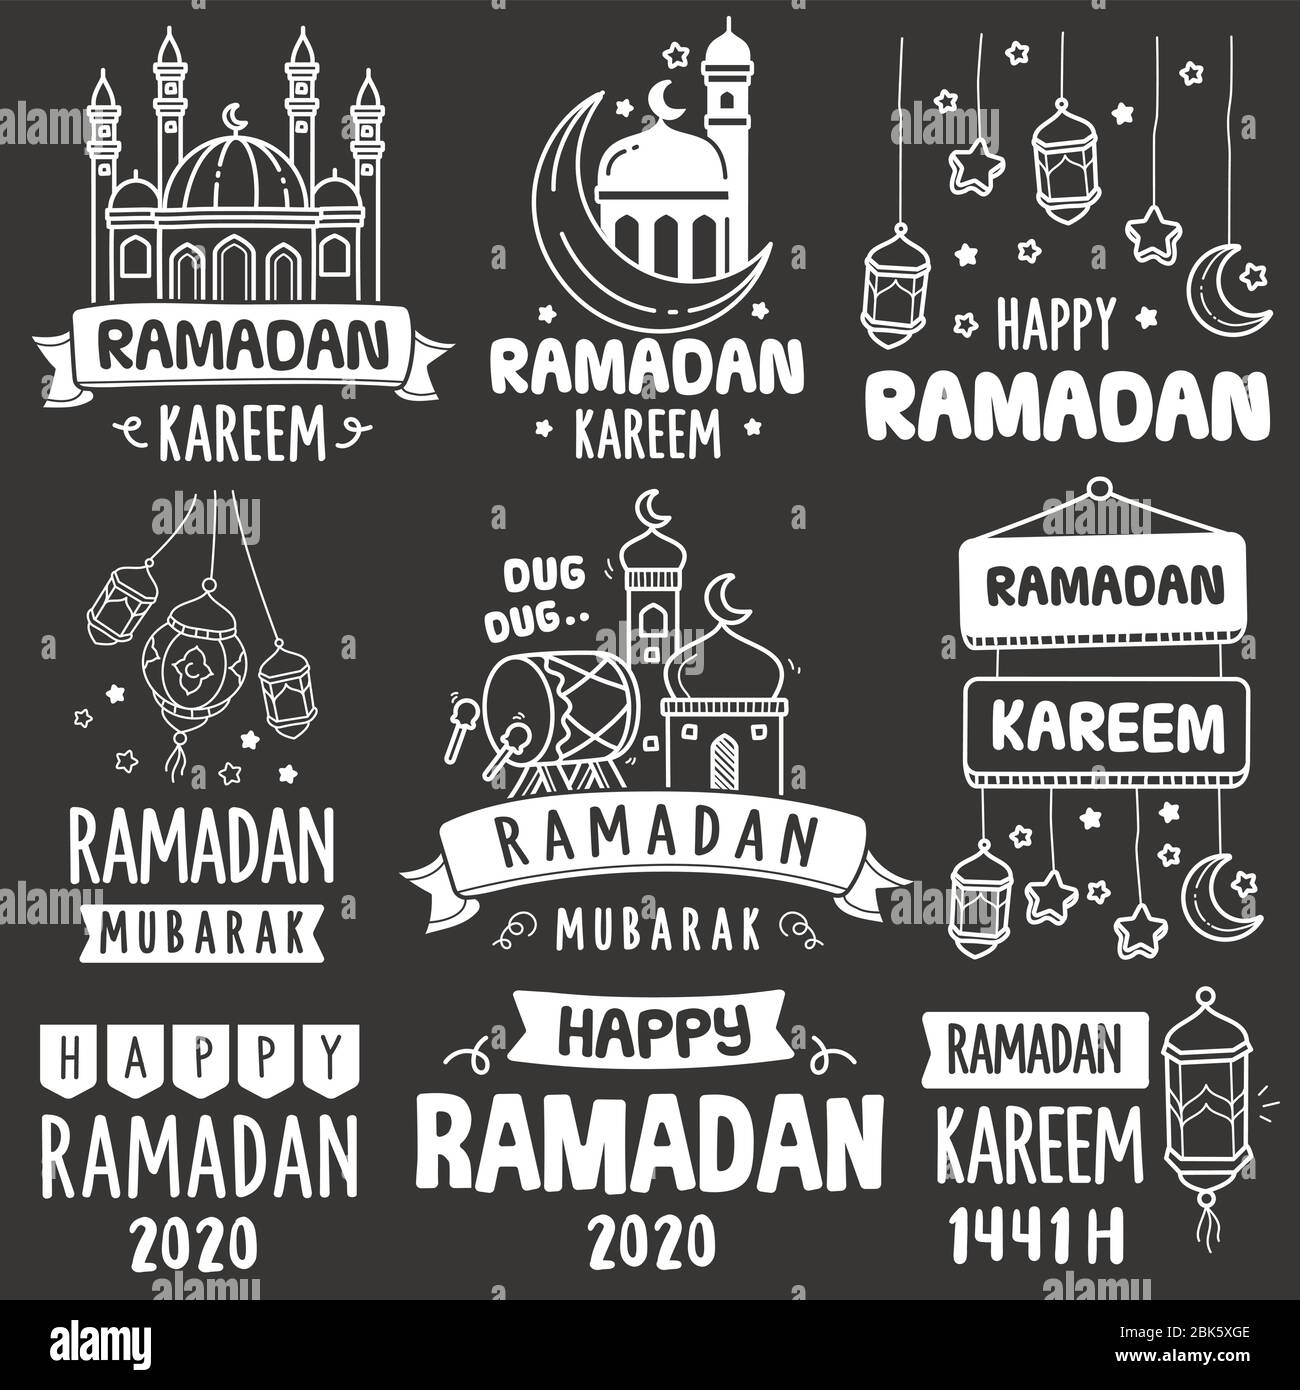 Set di elementi di dodle vettoriali per biglietti di auguri ramadan. Vari tipi di biglietti d'auguri ramadan disegnati a mano in stile illustrazione lavagna Illustrazione Vettoriale